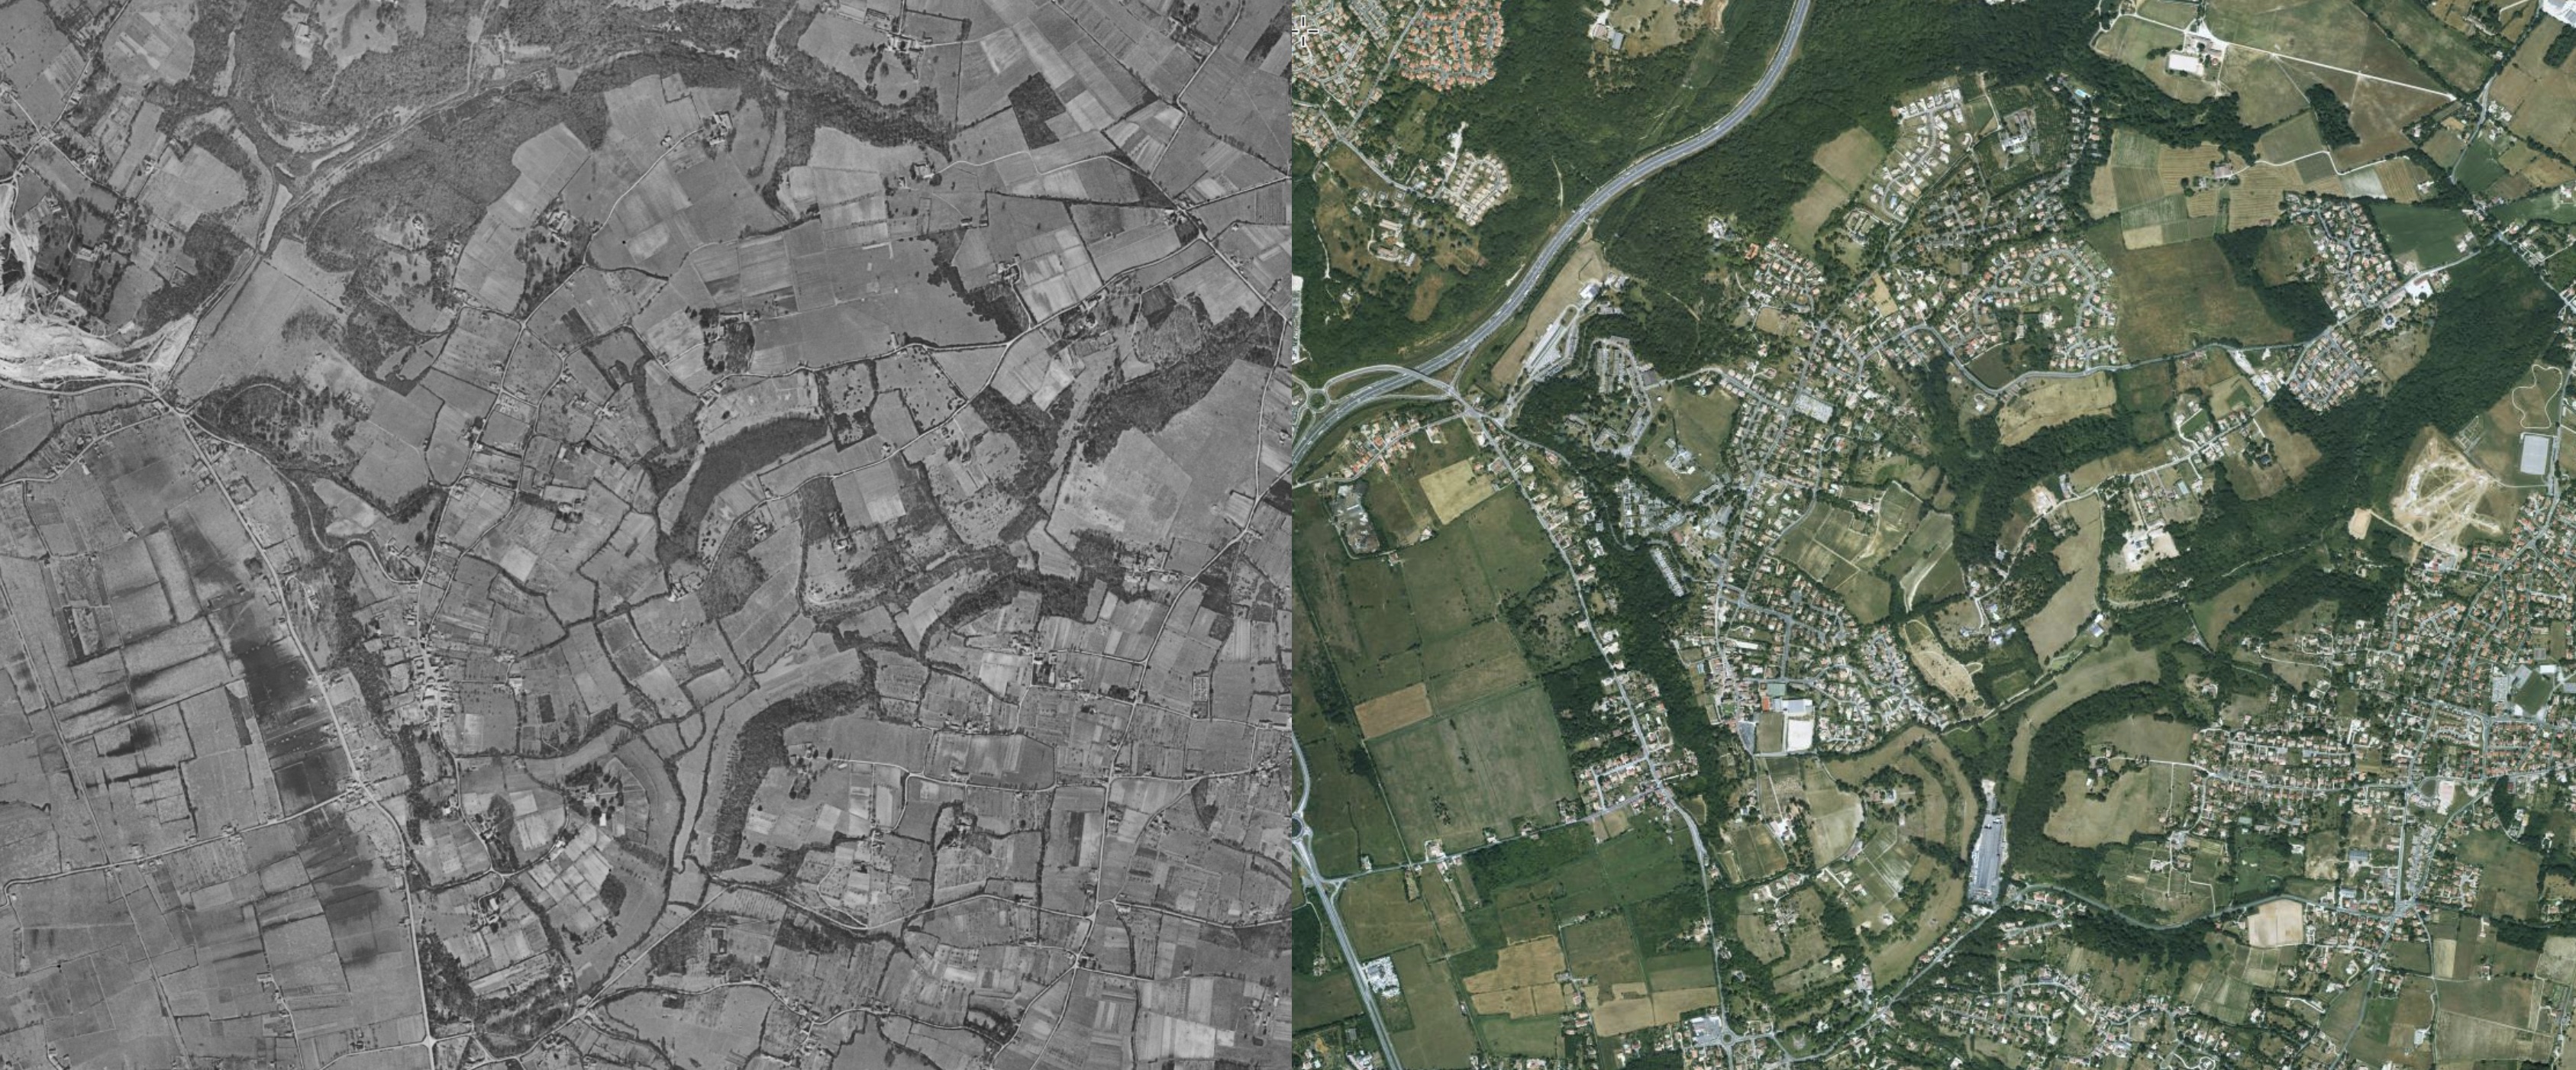 Comparaison de photos aériennes de 1950-1965 avec 2000-2005